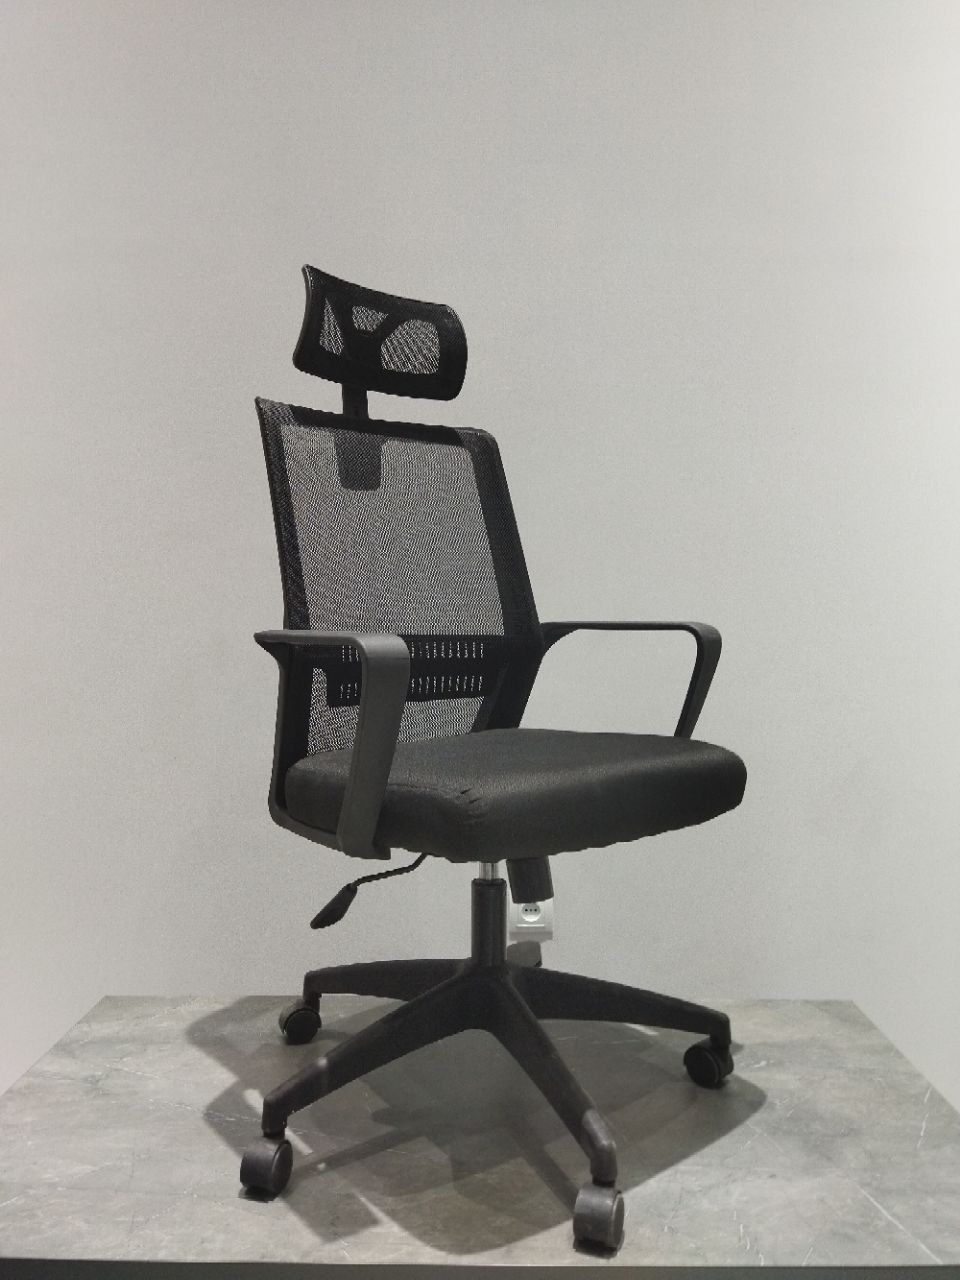 Офисное кресло модель Томар